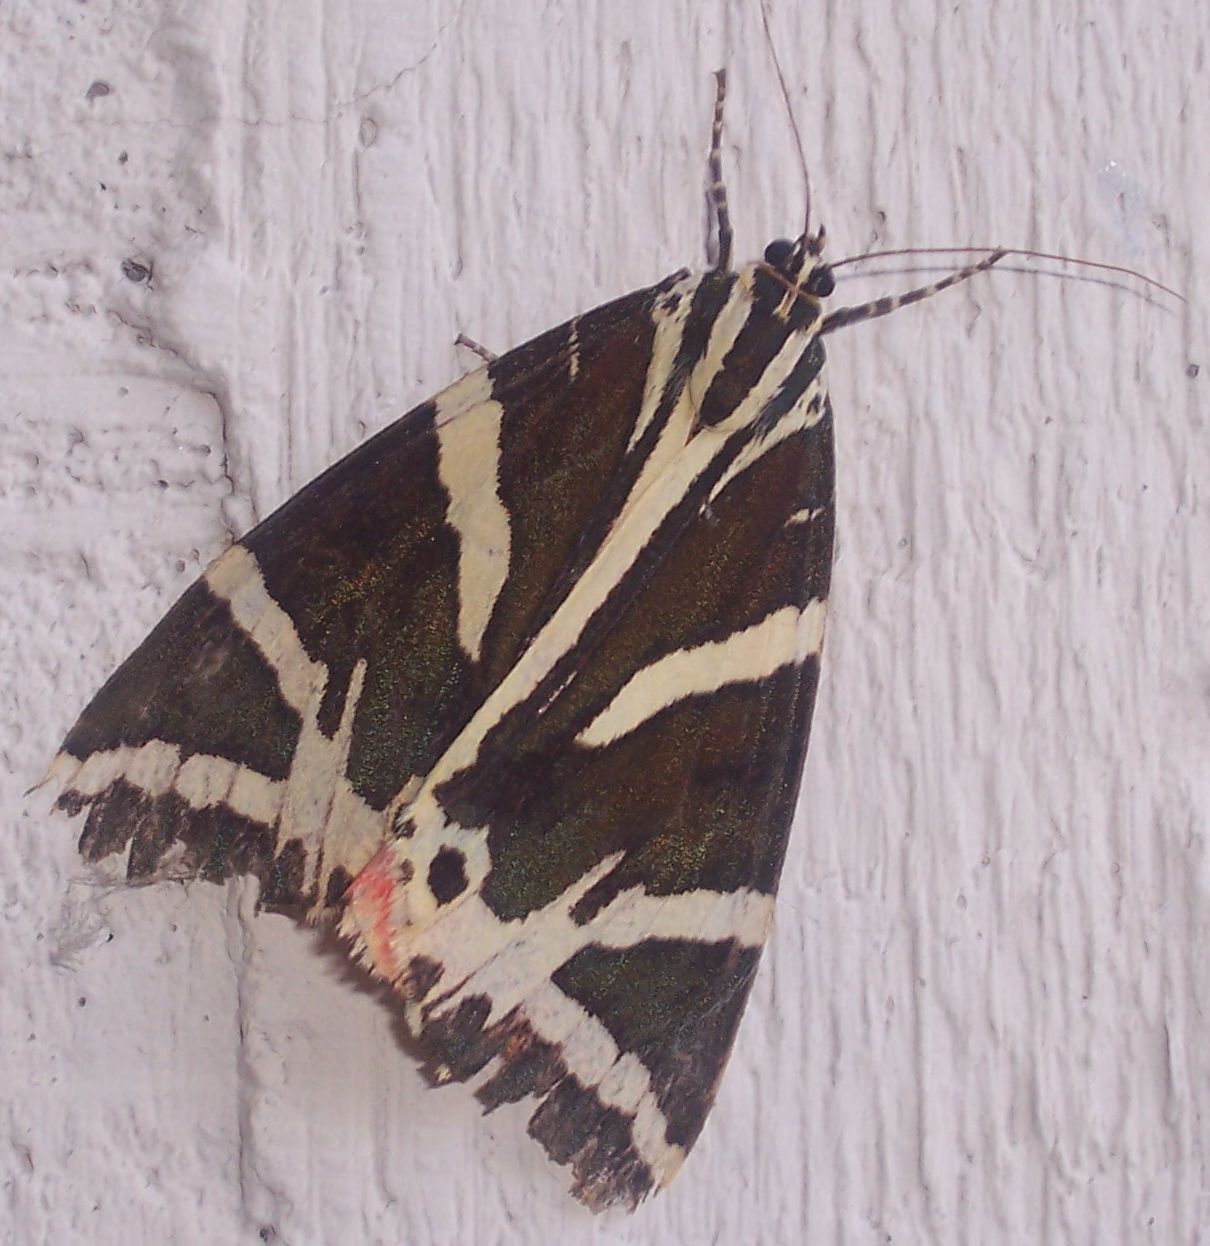 Grossa farfalla in bianco e nero - Euplagia quadripunctaria